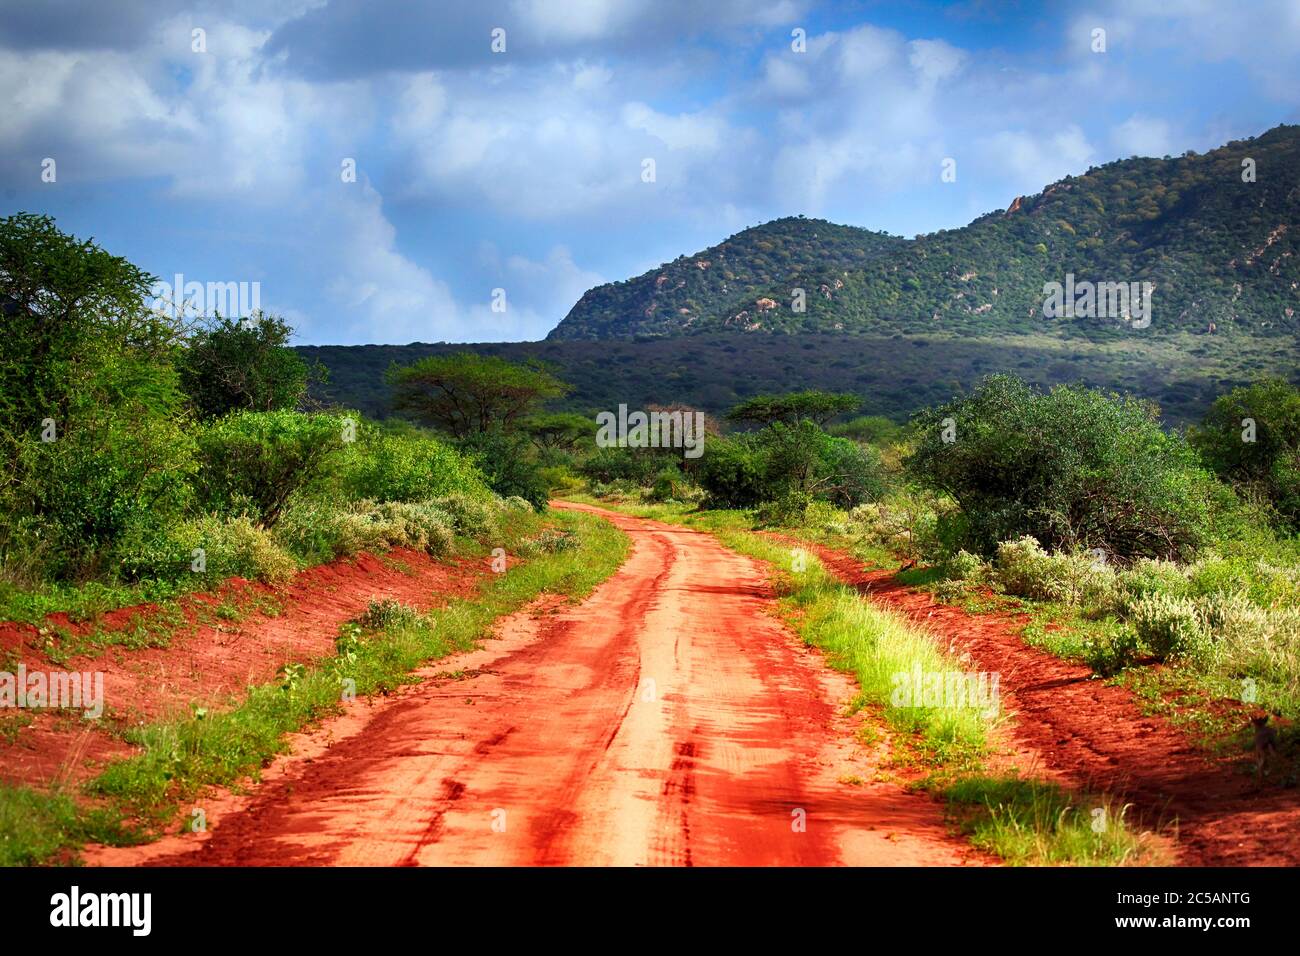 Park Tsavo East National in Kenya Stock Photo